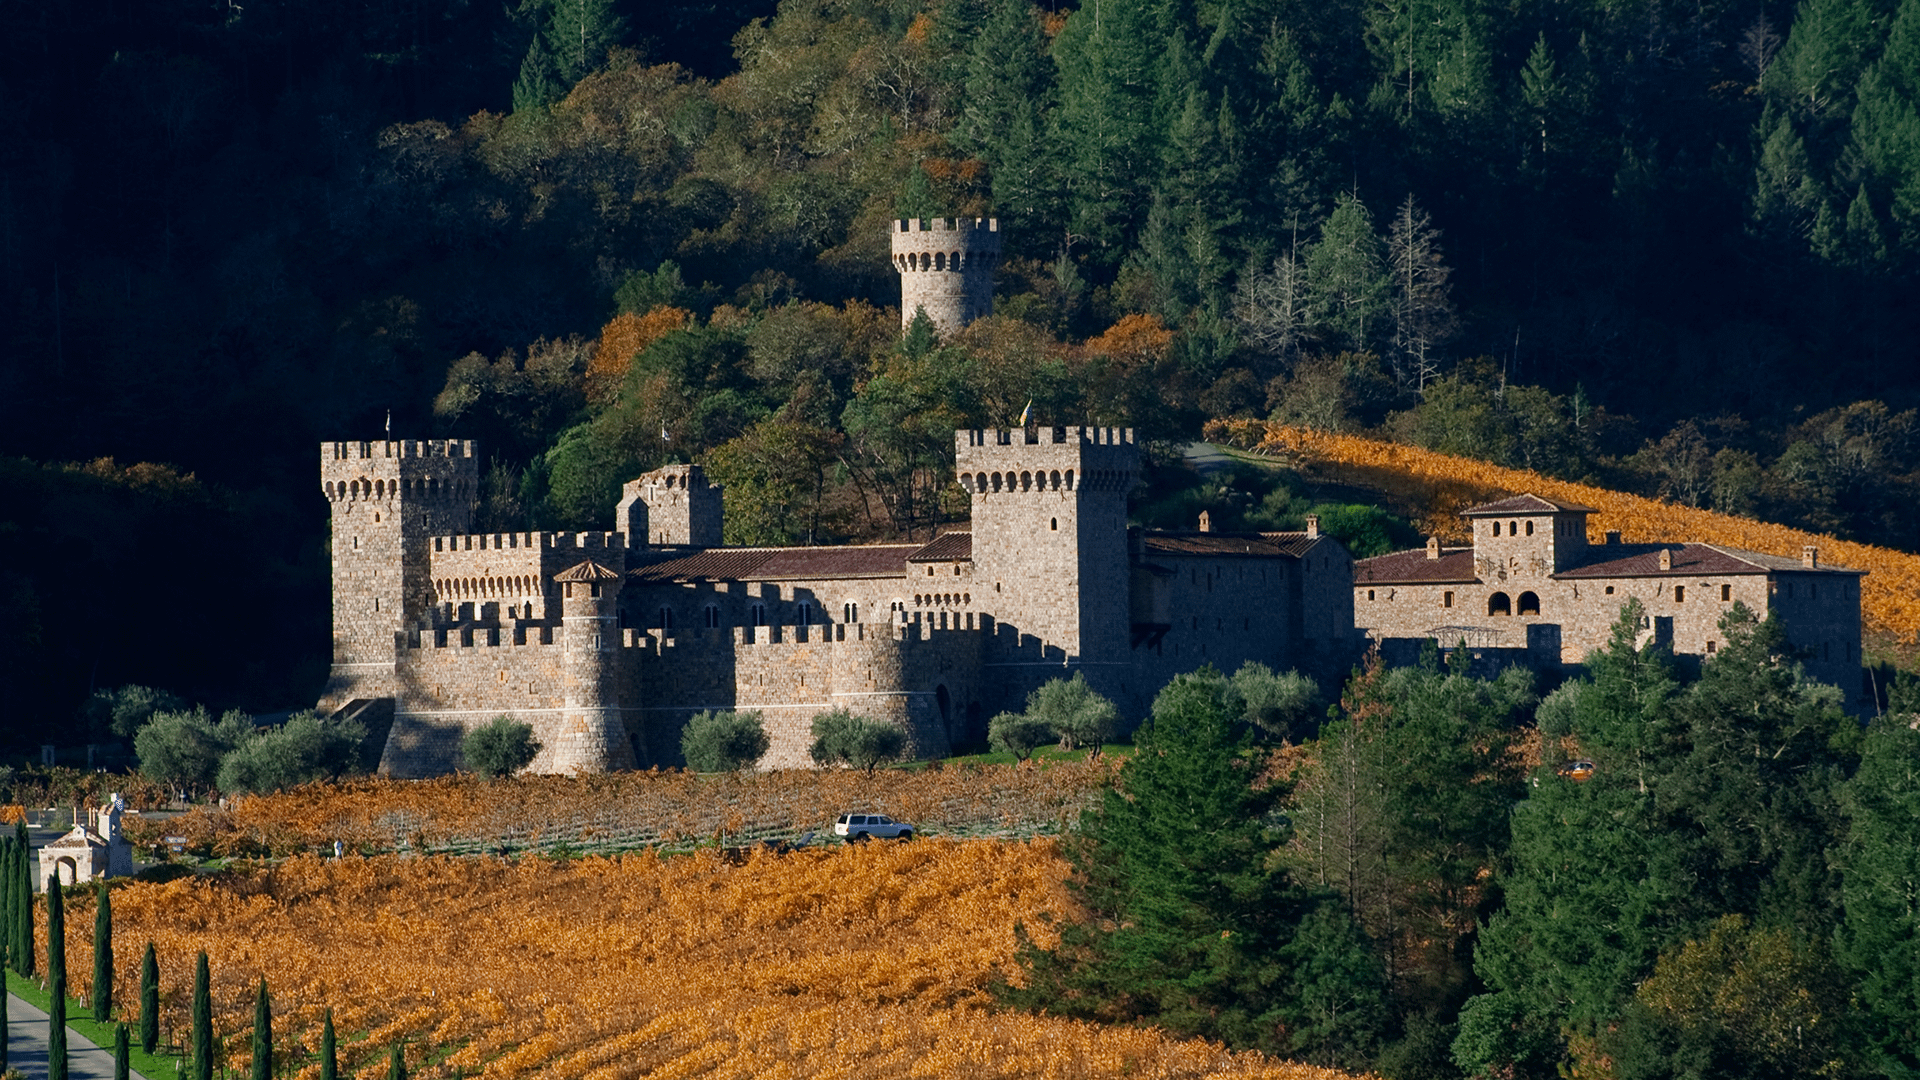 Castello di Amorosa, Calistoga, Napa Valley Wineries